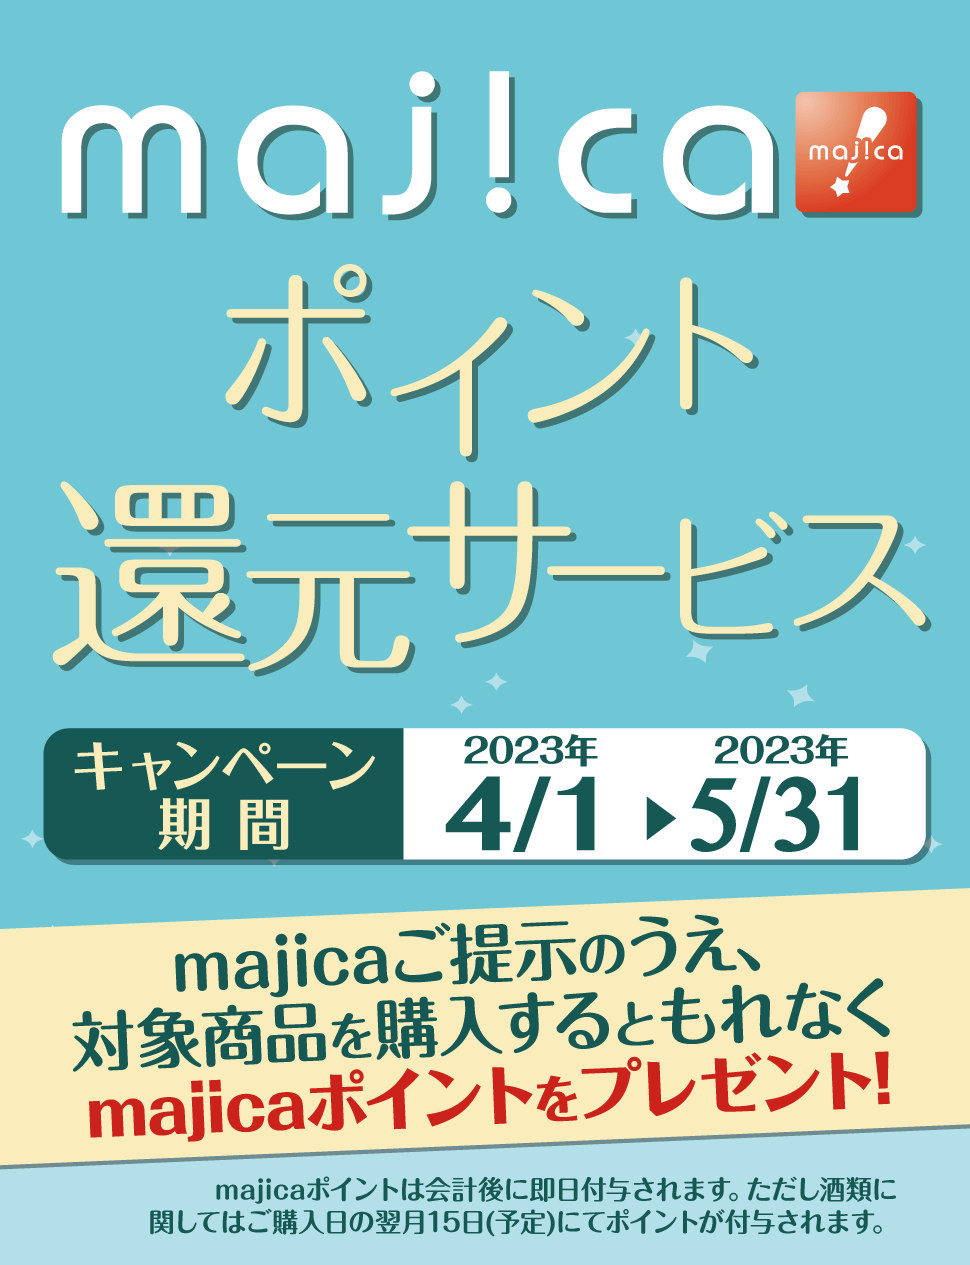 majicaポイント還元サービス「グルメキャンペーン」